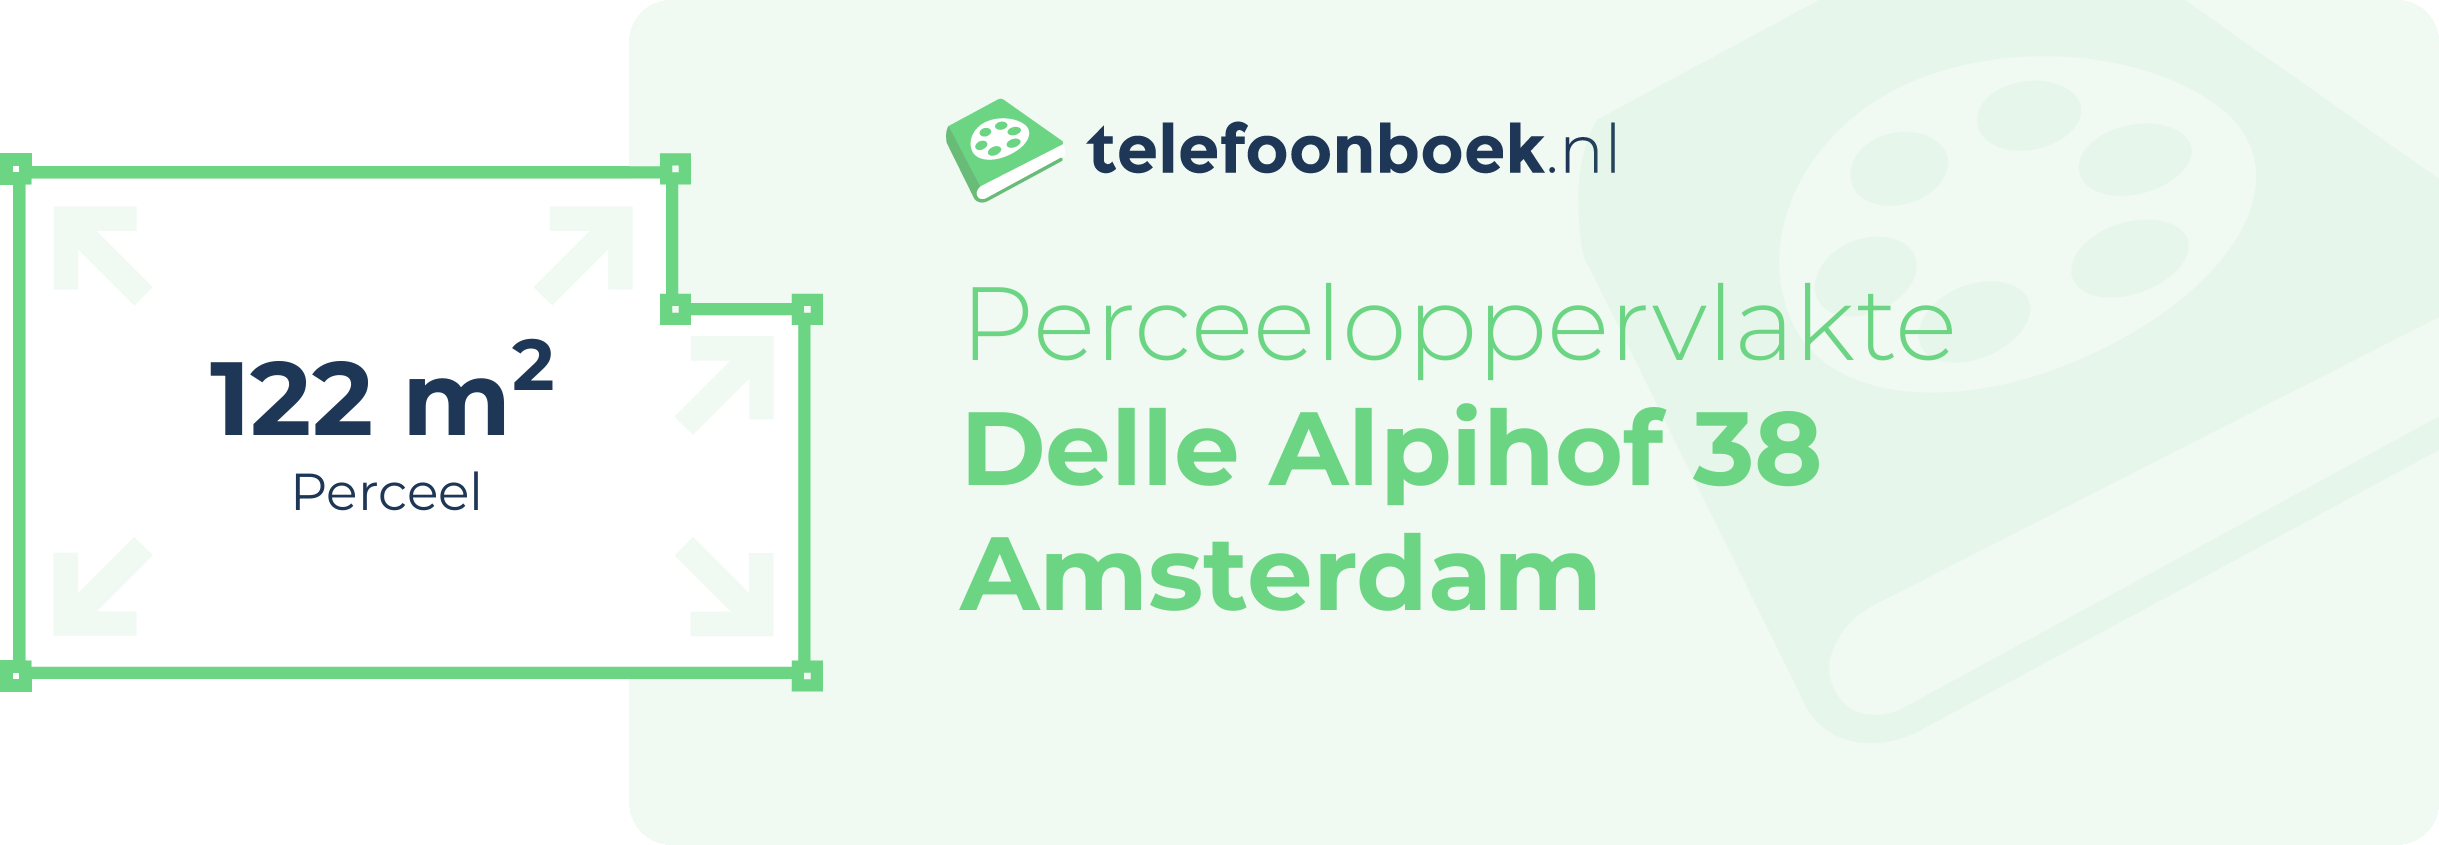 Perceeloppervlakte Delle Alpihof 38 Amsterdam